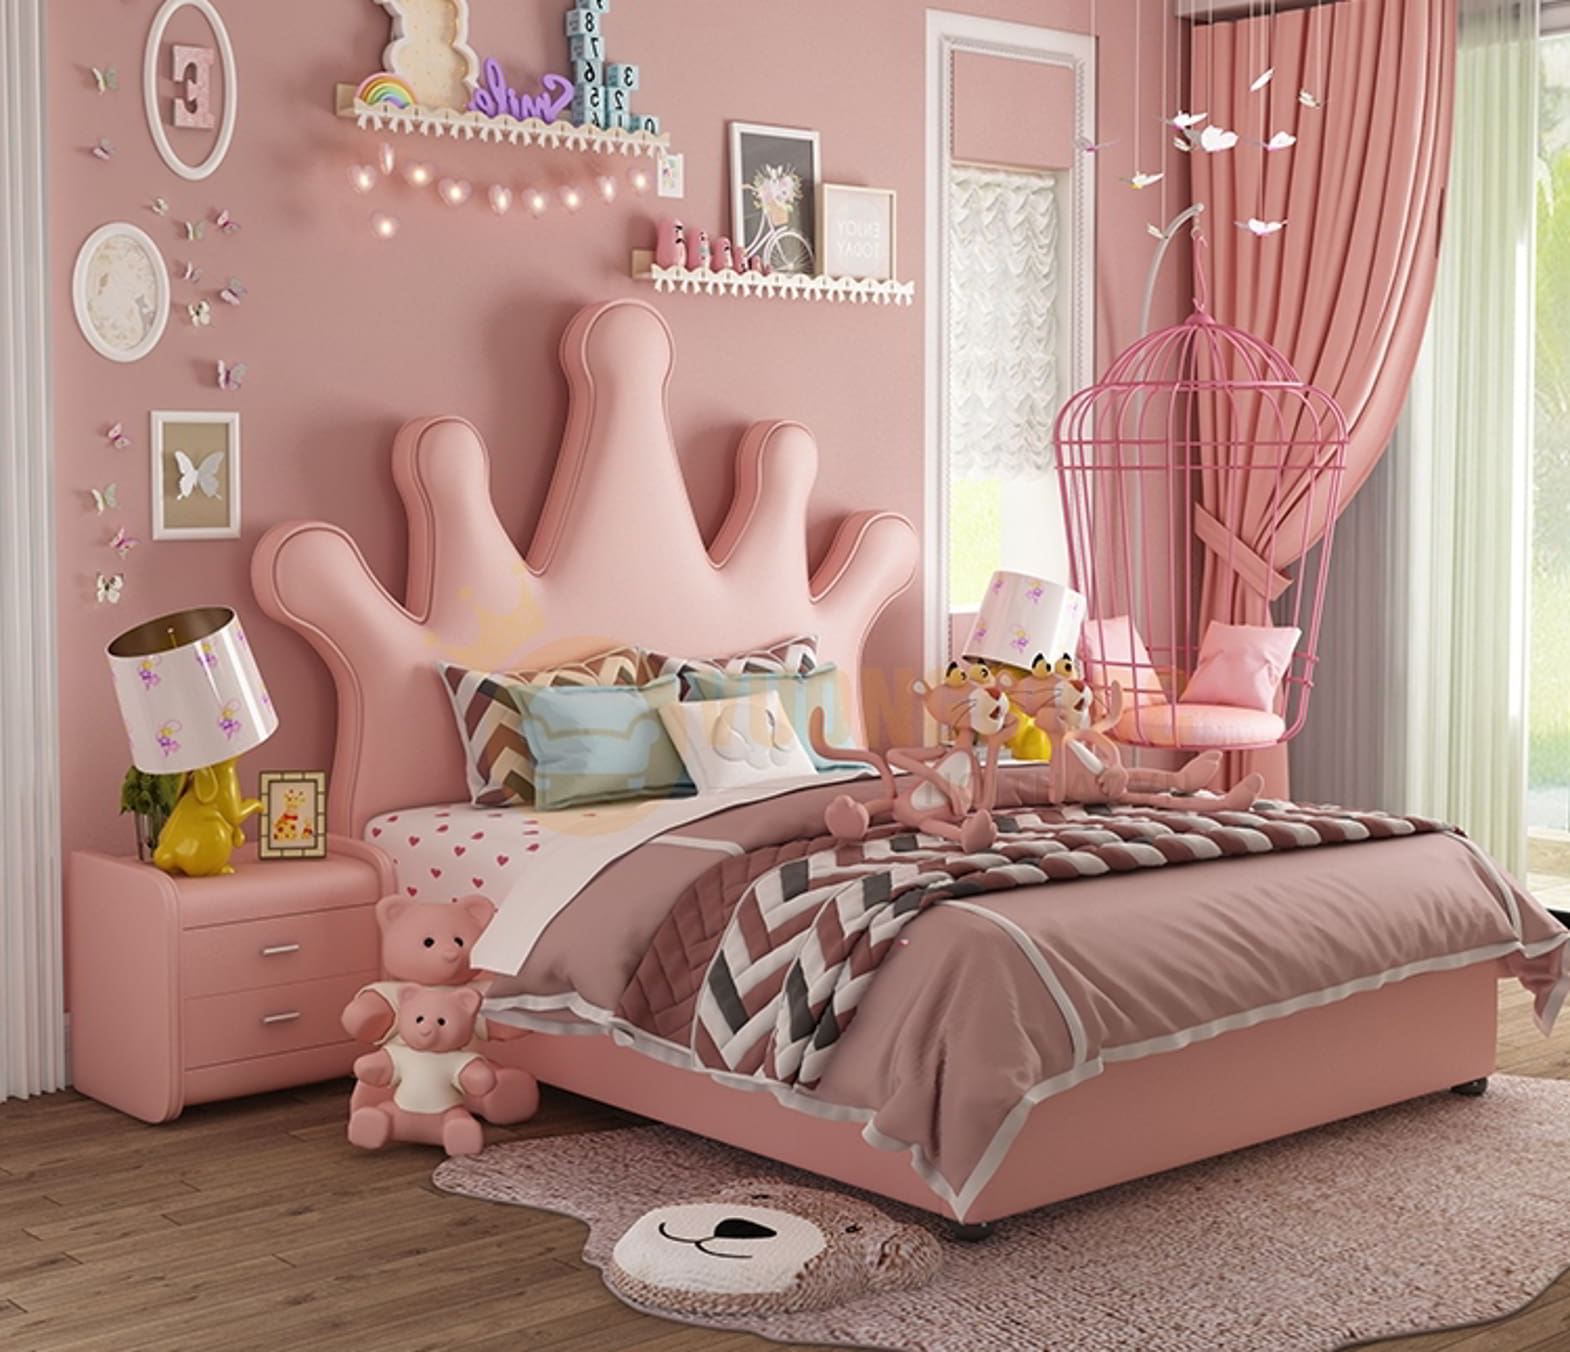 Trang trí phòng ngủ con gái dễ thương